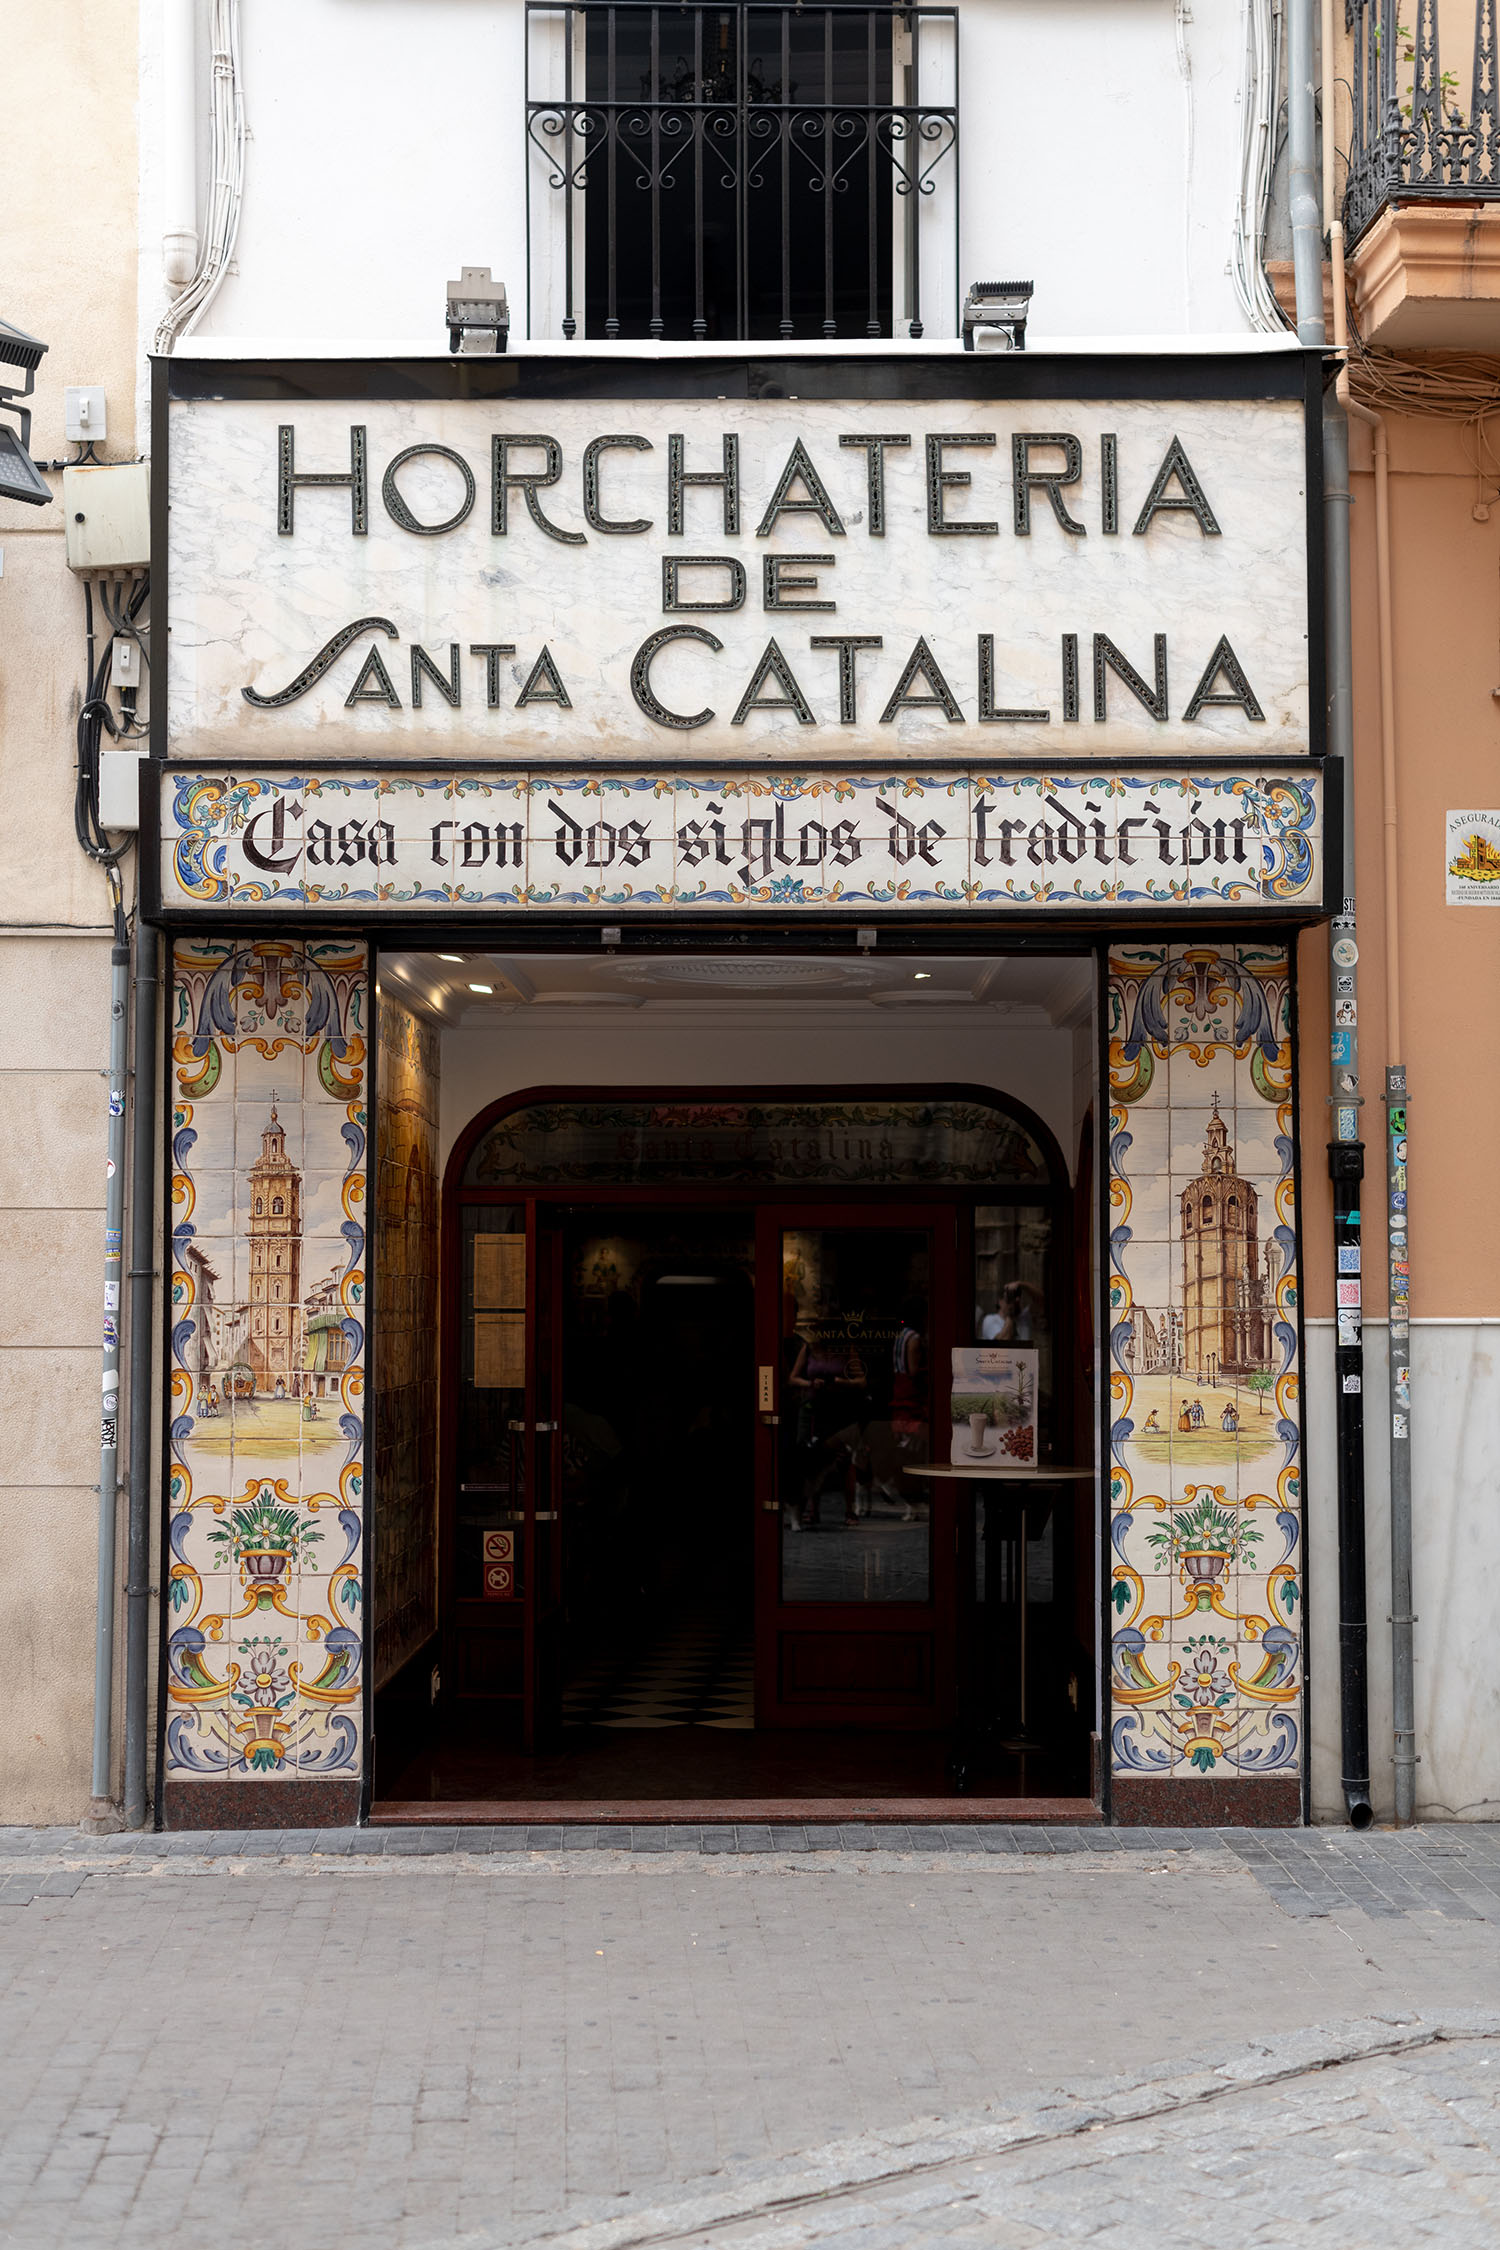 Coco & Voltaire - Horchateria de Santa Catalina storefront in Valencia